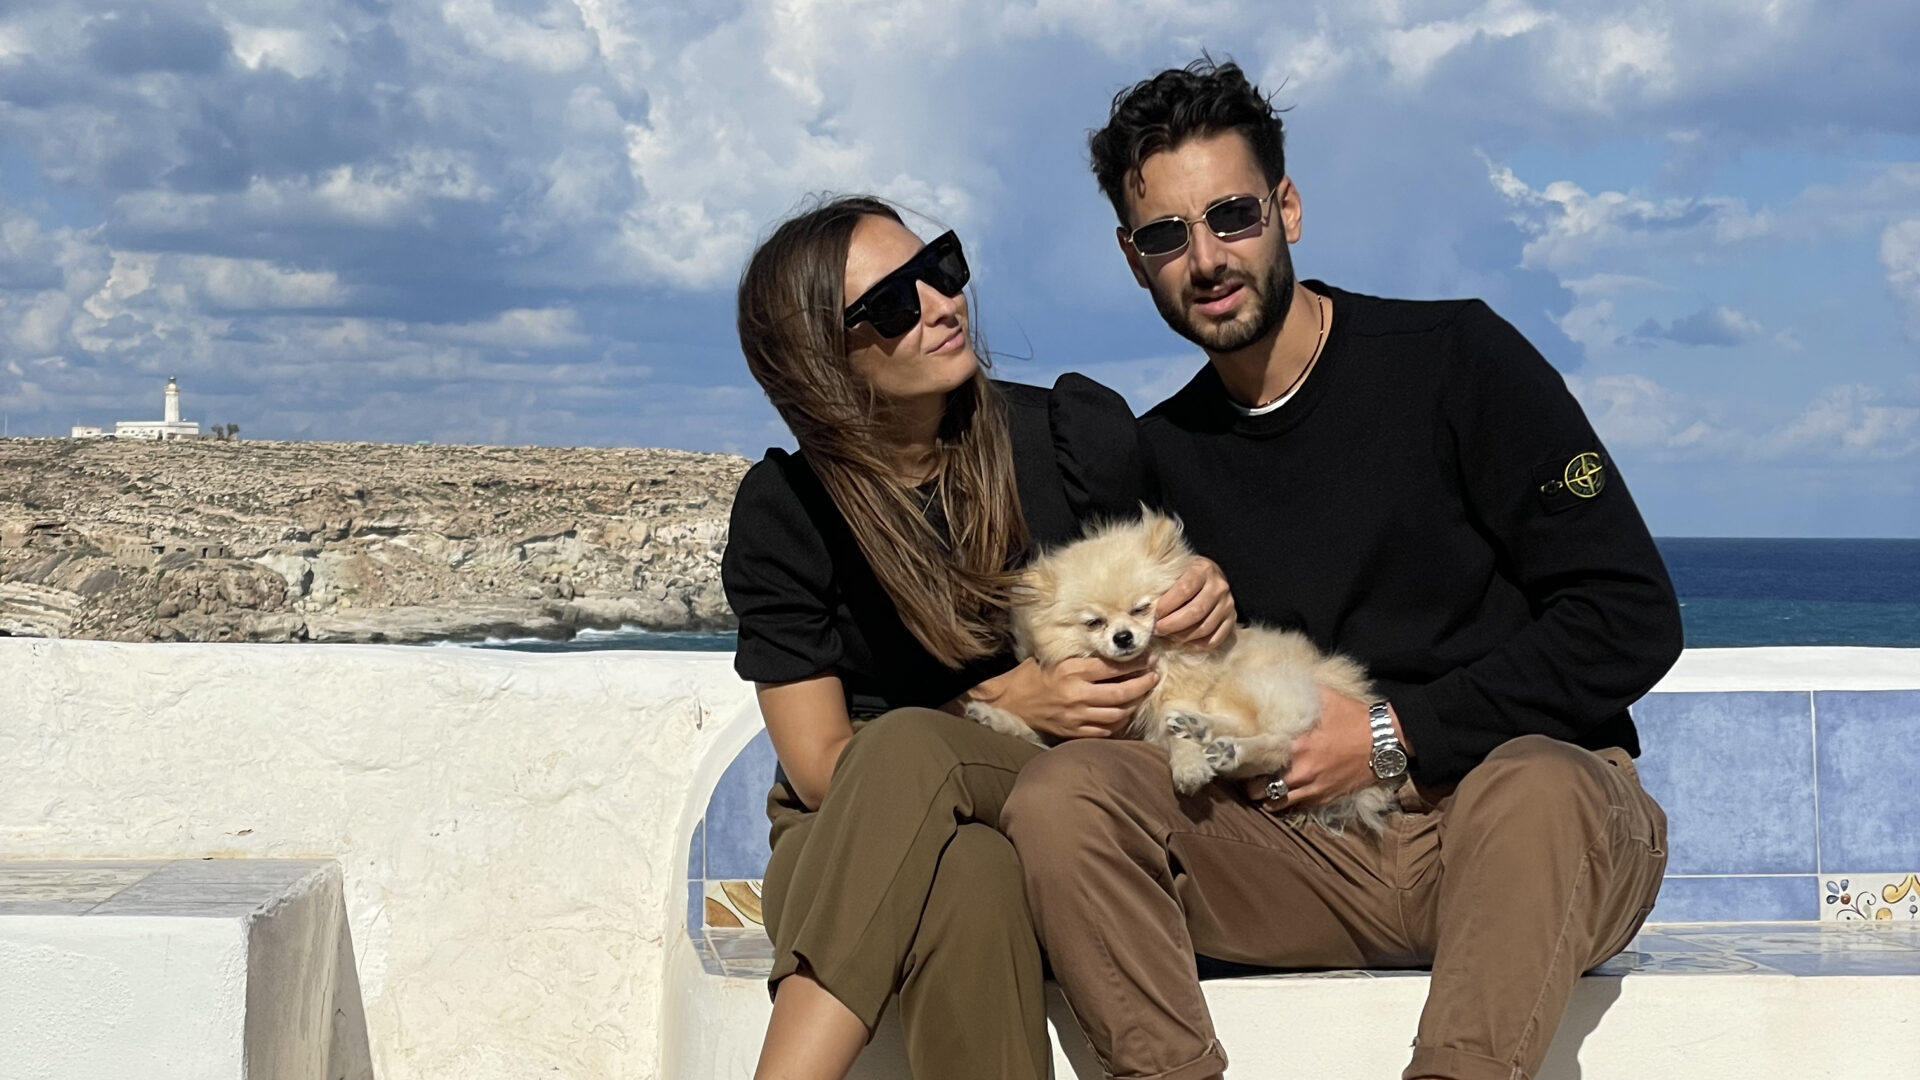 Fabio e Manuela e la loro nuova vita a Lampedusa